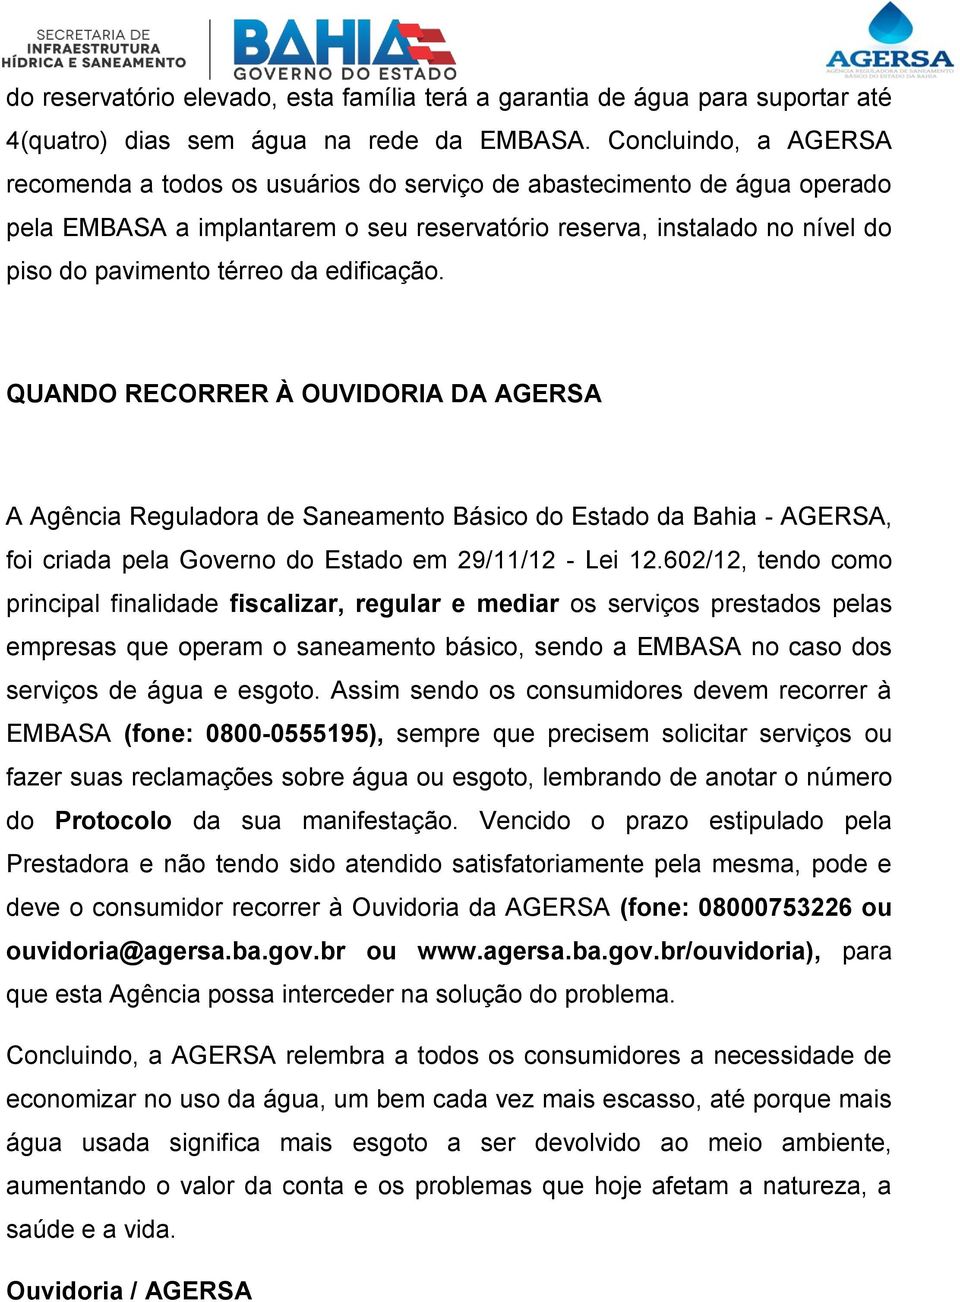 edificação. QUANDO RECORRER À OUVIDORIA DA AGERSA A Agência Reguladora de Saneamento Básico do Estado da Bahia - AGERSA, foi criada pela Governo do Estado em 29/11/12 - Lei 12.